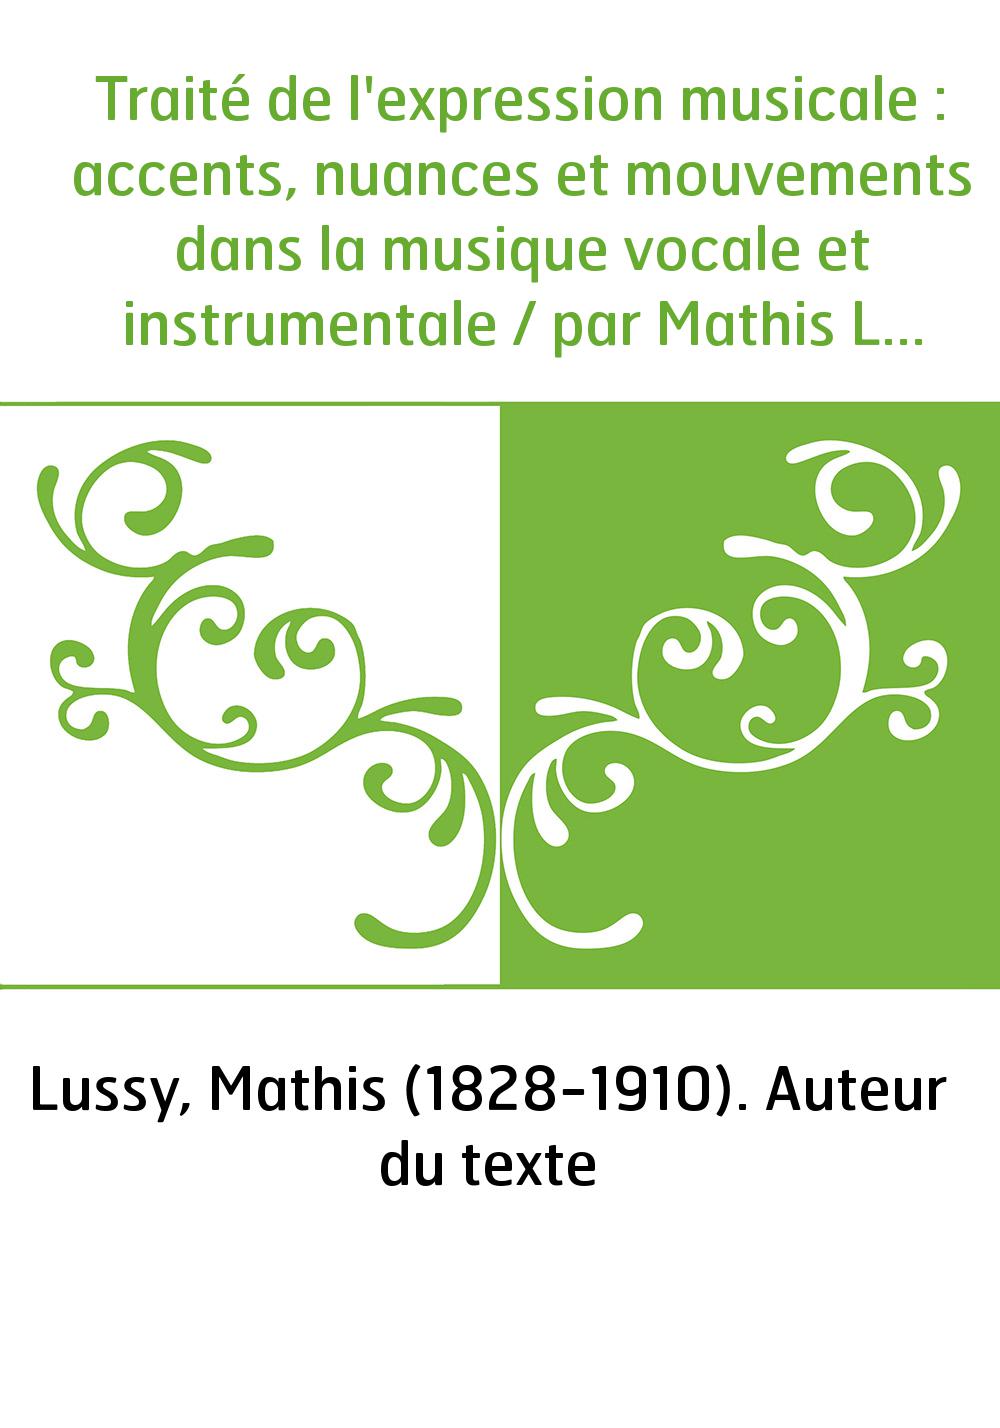 Traité de l'expression musicale : accents, nuances et mouvements dans la musique vocale et instrumentale / par Mathis Lussy...